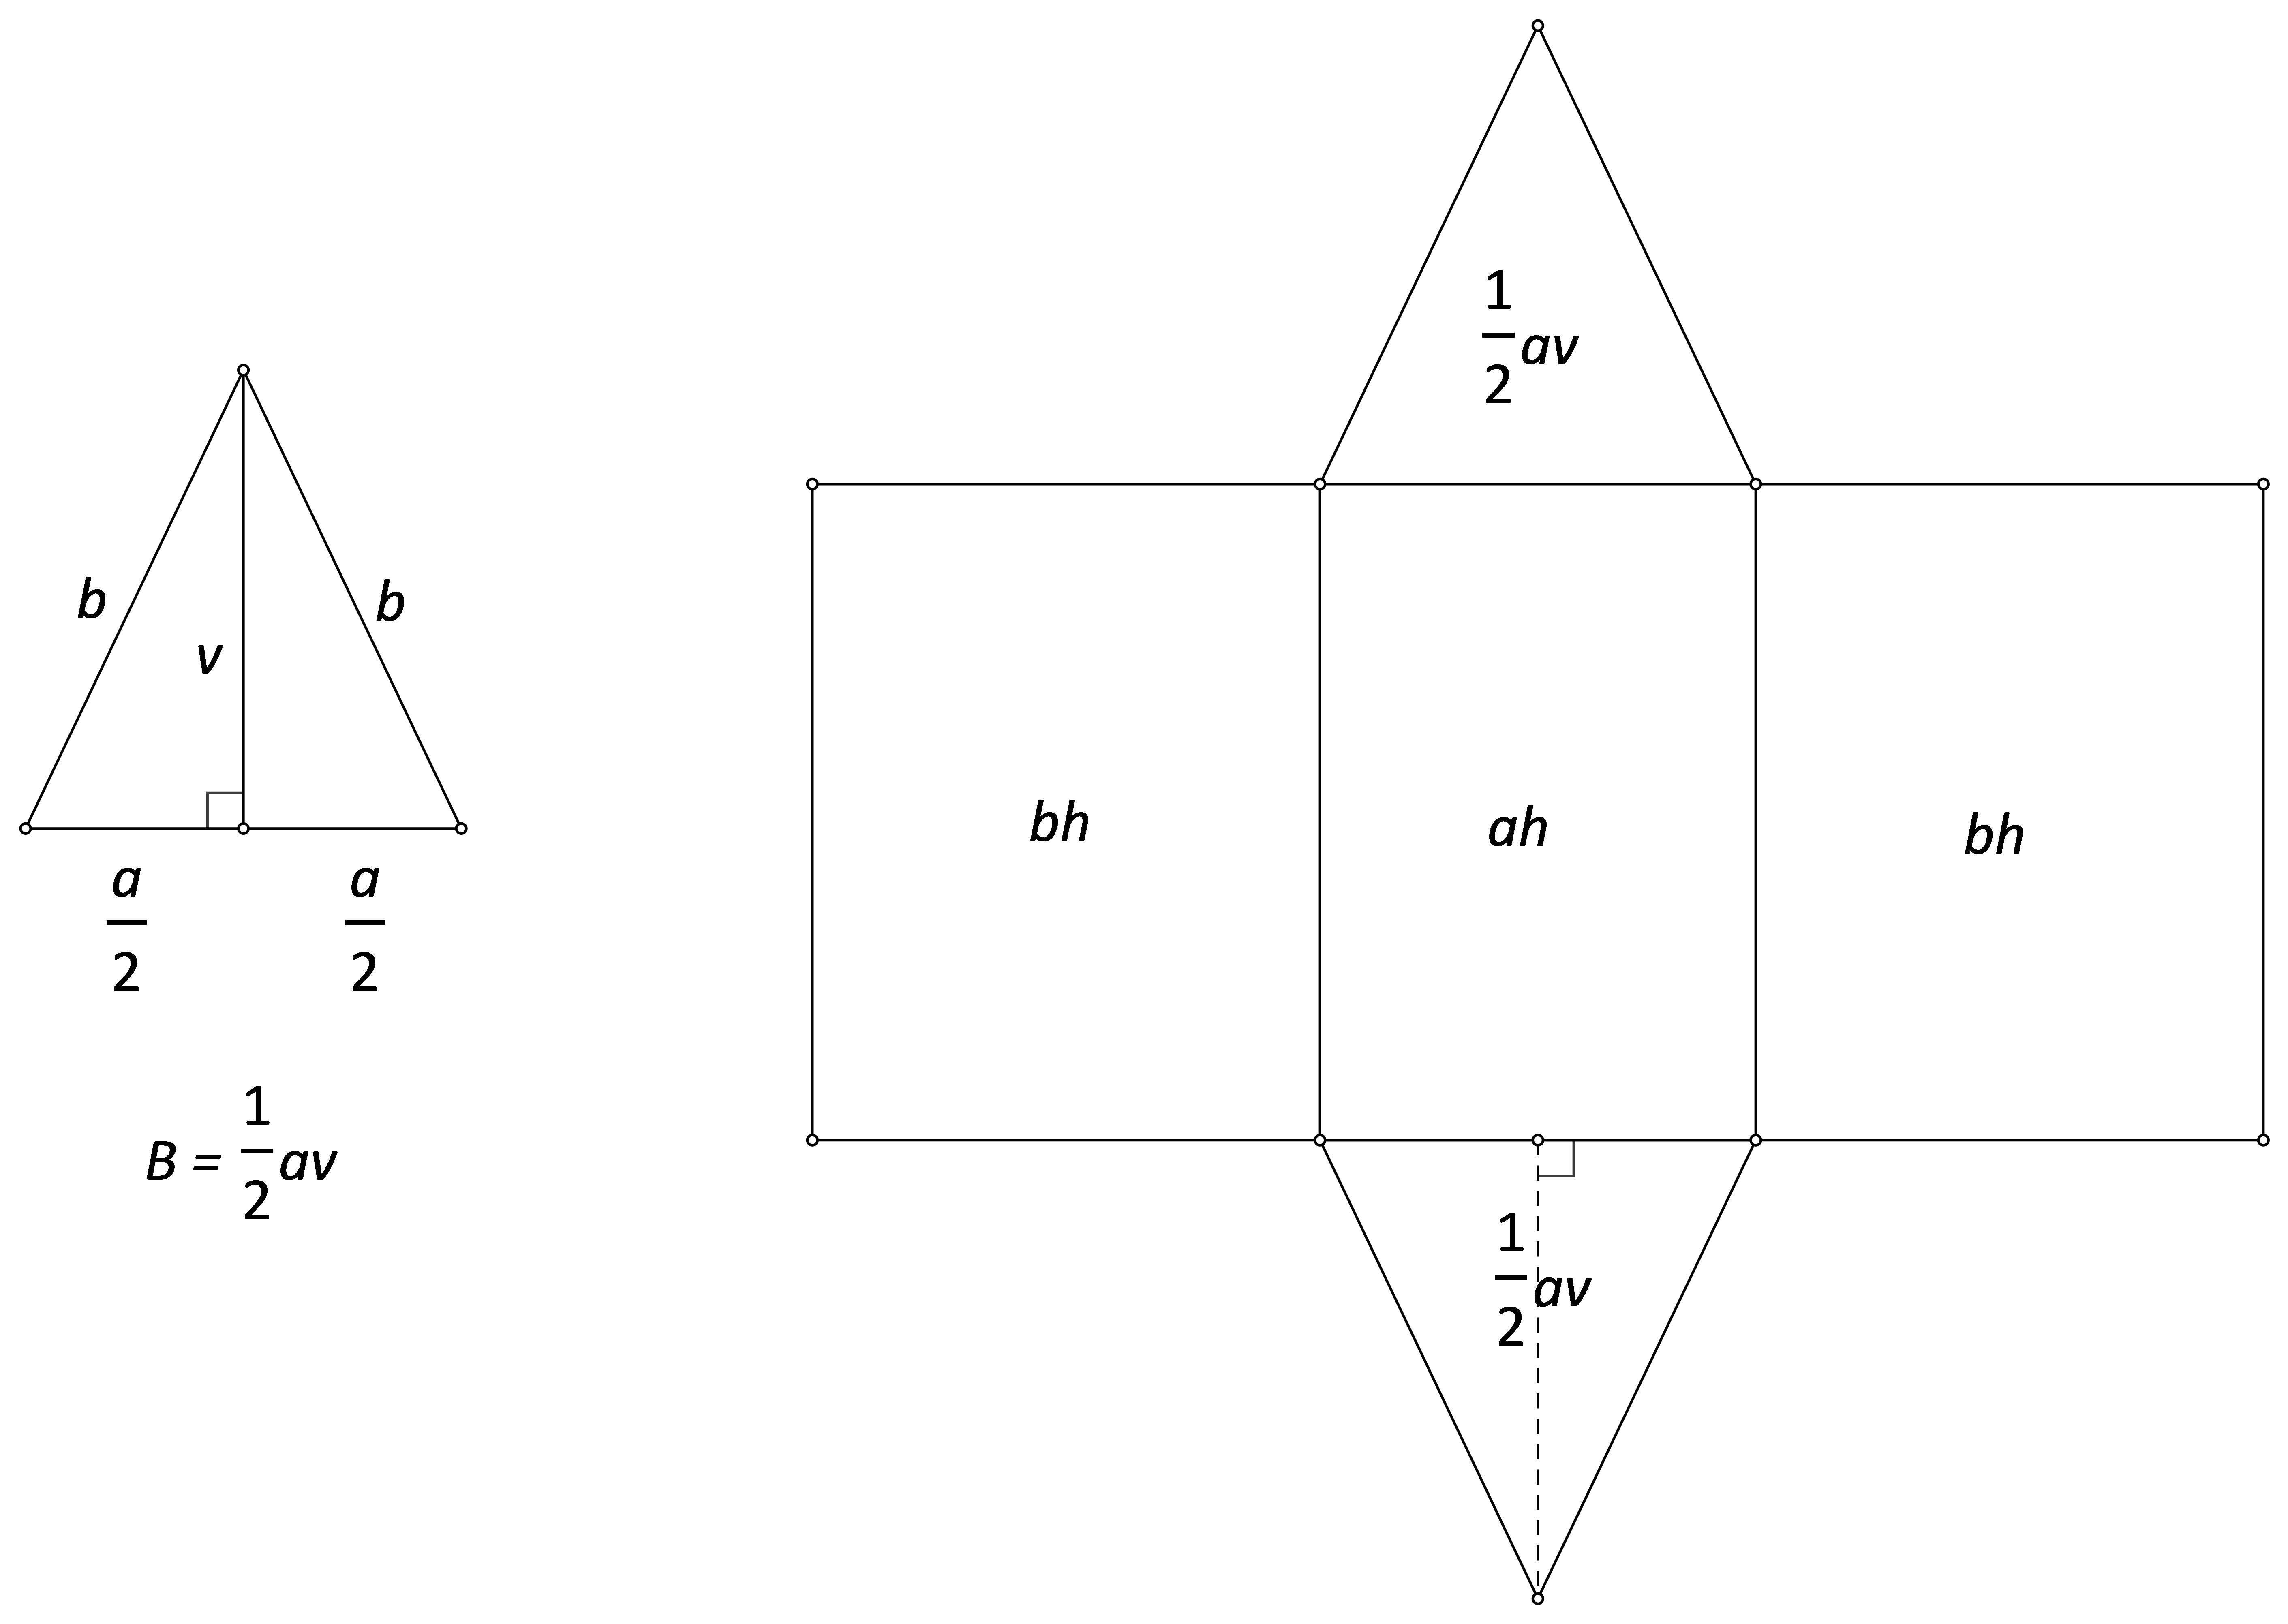 Slika prikazuje prizmu kojoj je baza jednakokračni trokut s upisanom formulama za površinu pojedinih strana.